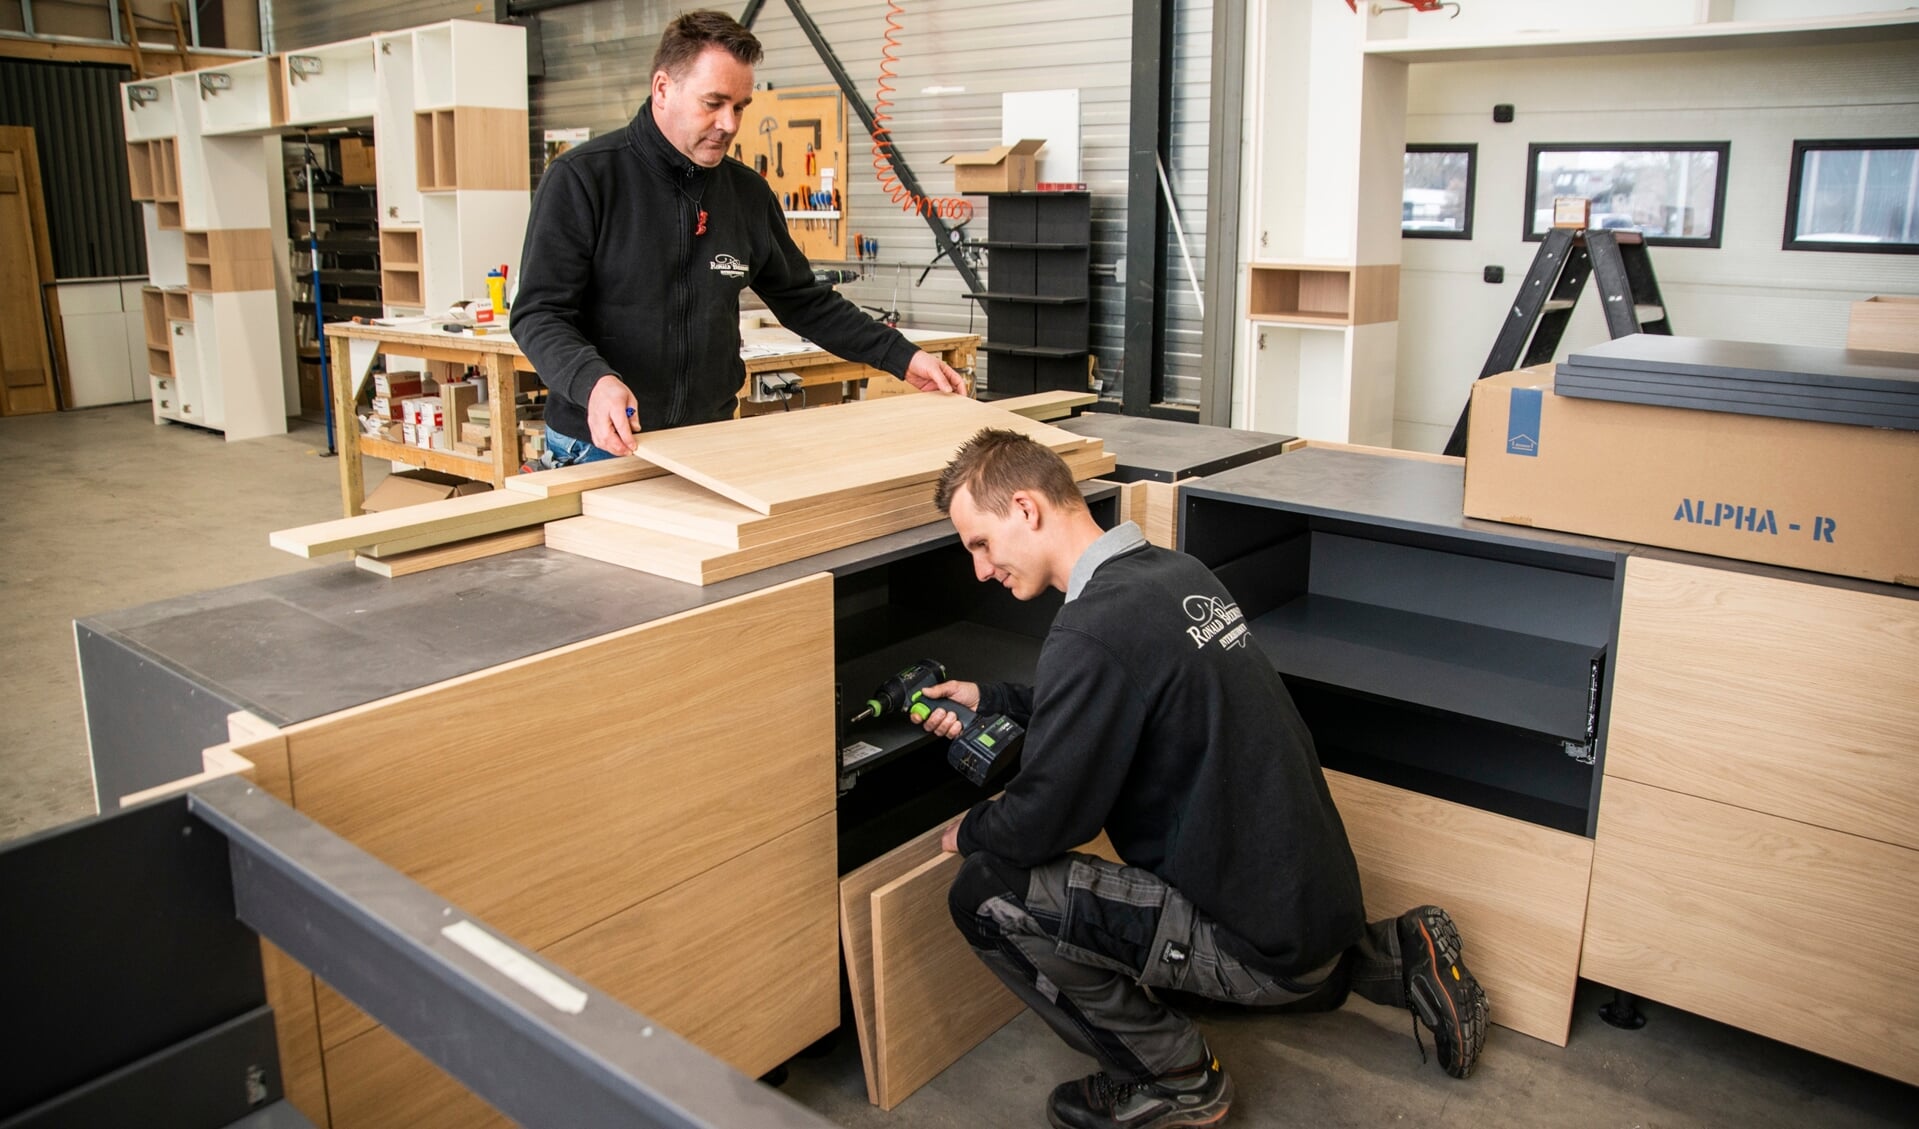 Beerdsen Interieurbouw & Keukens in Barneveld zoekt per direct ervaren meubelmakers en een junior interieurbouwer.